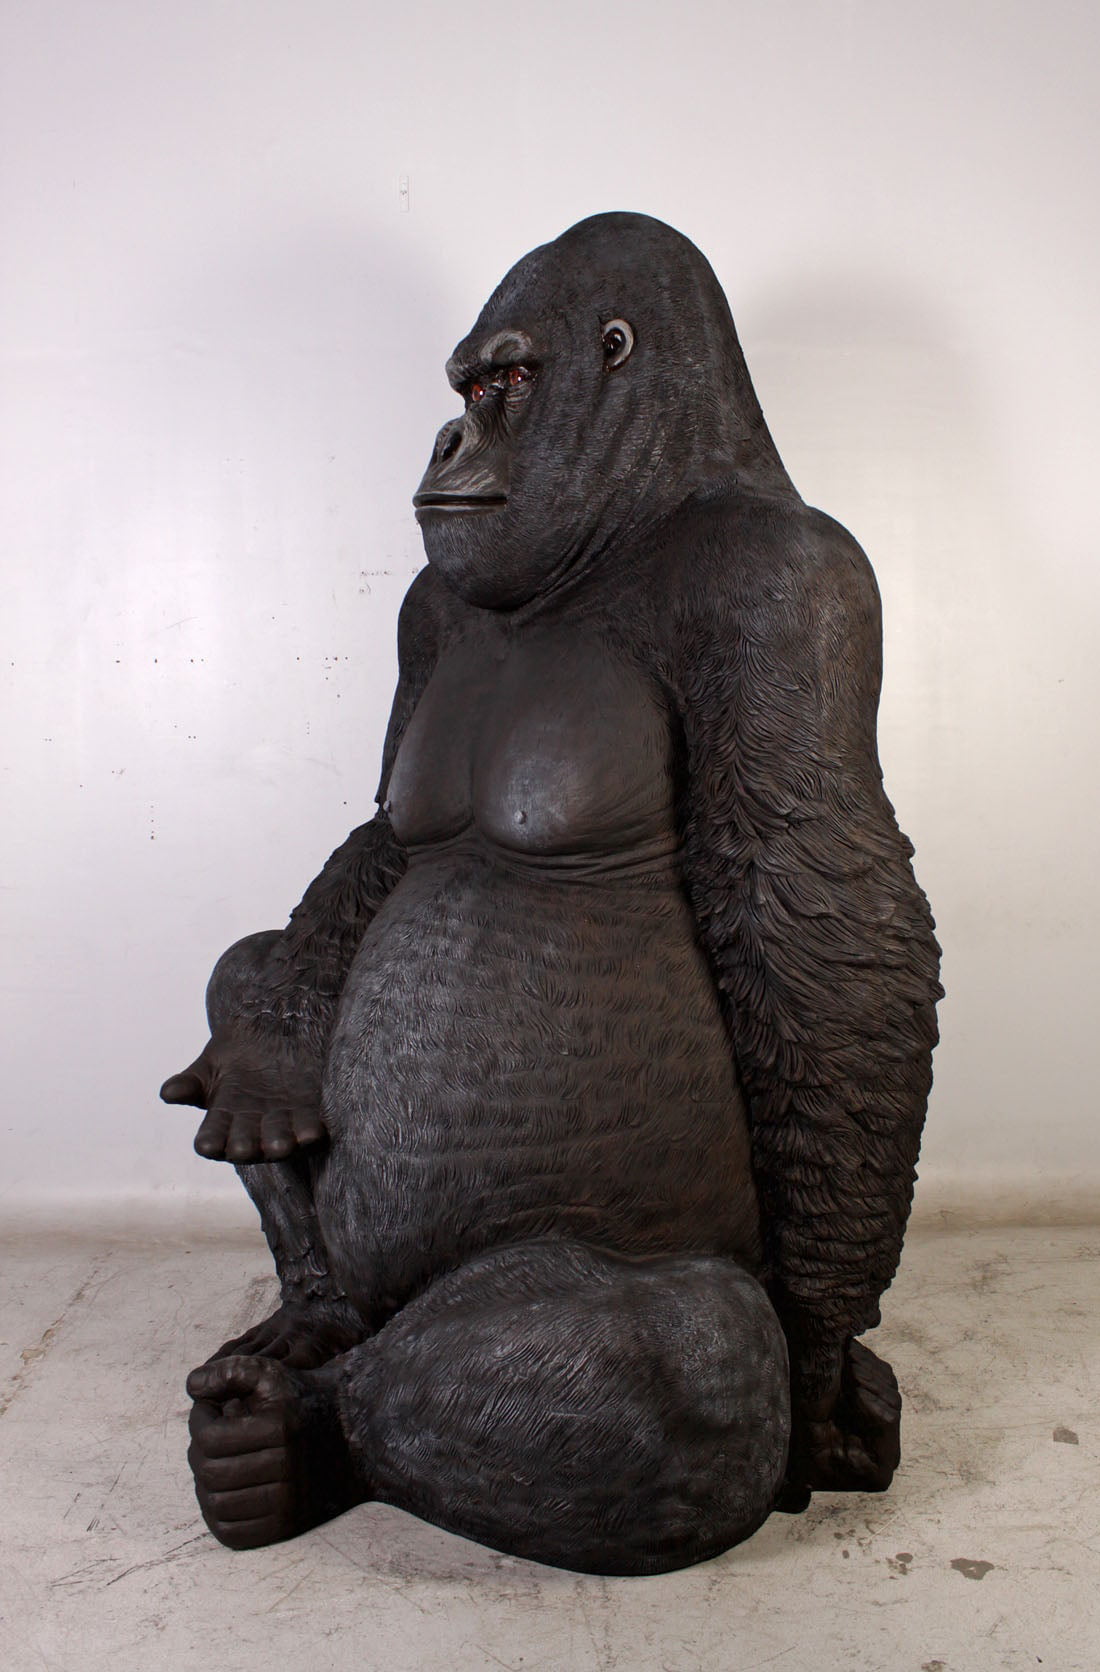 Jumbo Silverback Gorilla 8 ft Statue Jumbo Silverback Gorilla Statue